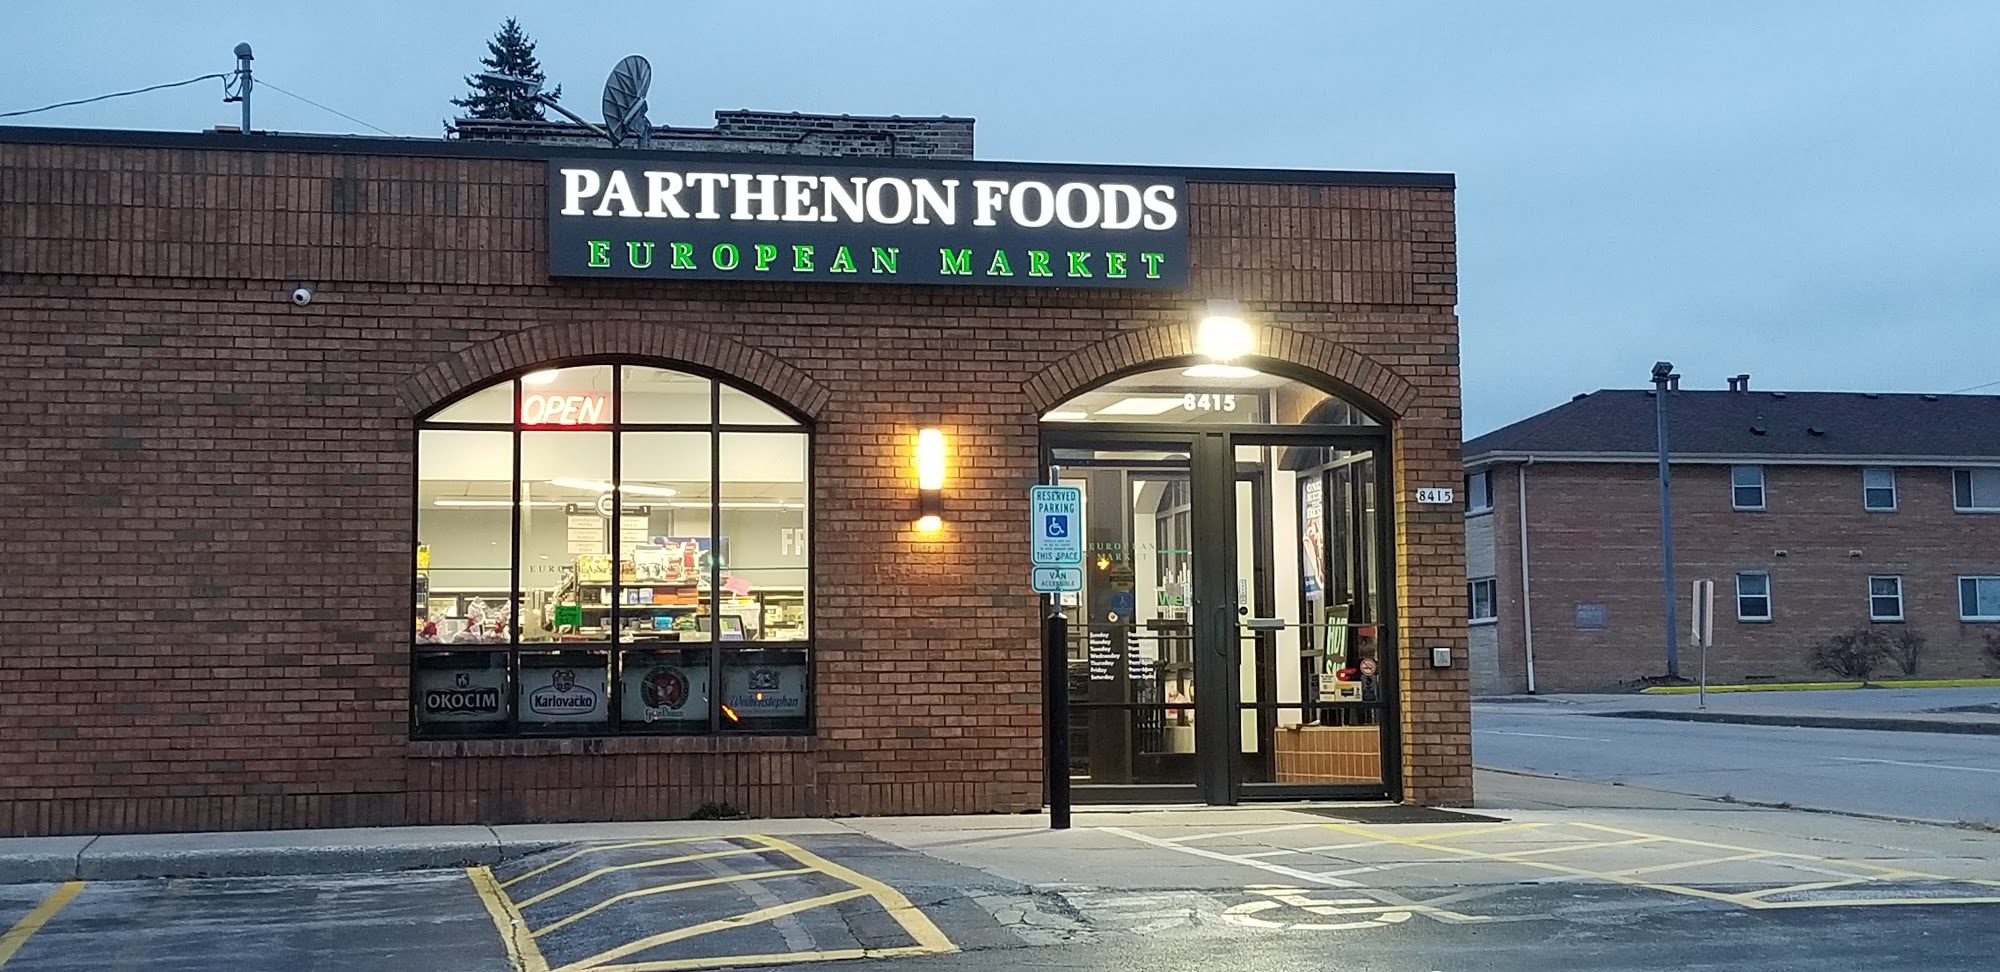 Parthenon Foods - European Market